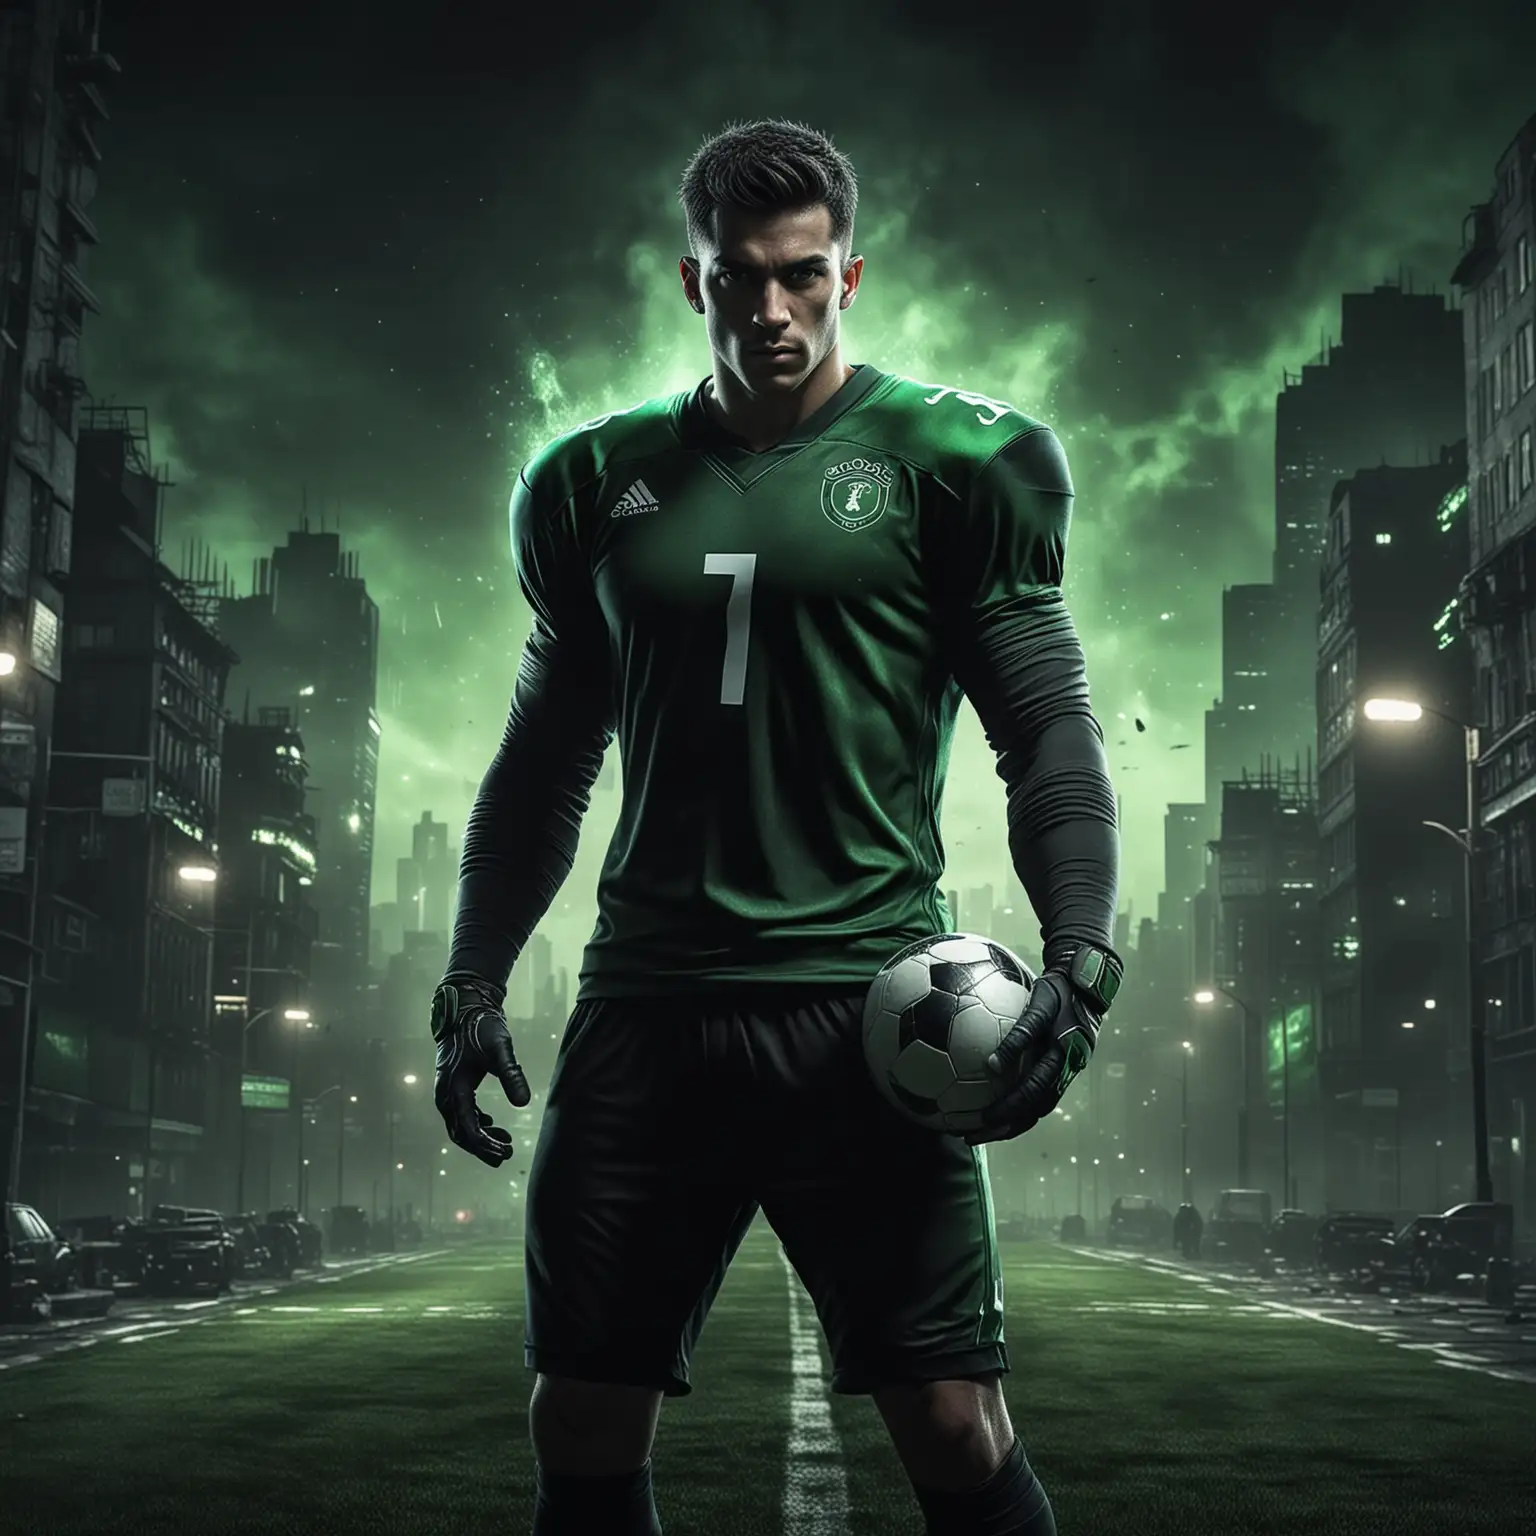 足球选手角色，穿黑绿色衣服，黑暗城市有氛围感的背景，有特效，黑绿色的色调，逼真，4k高清，